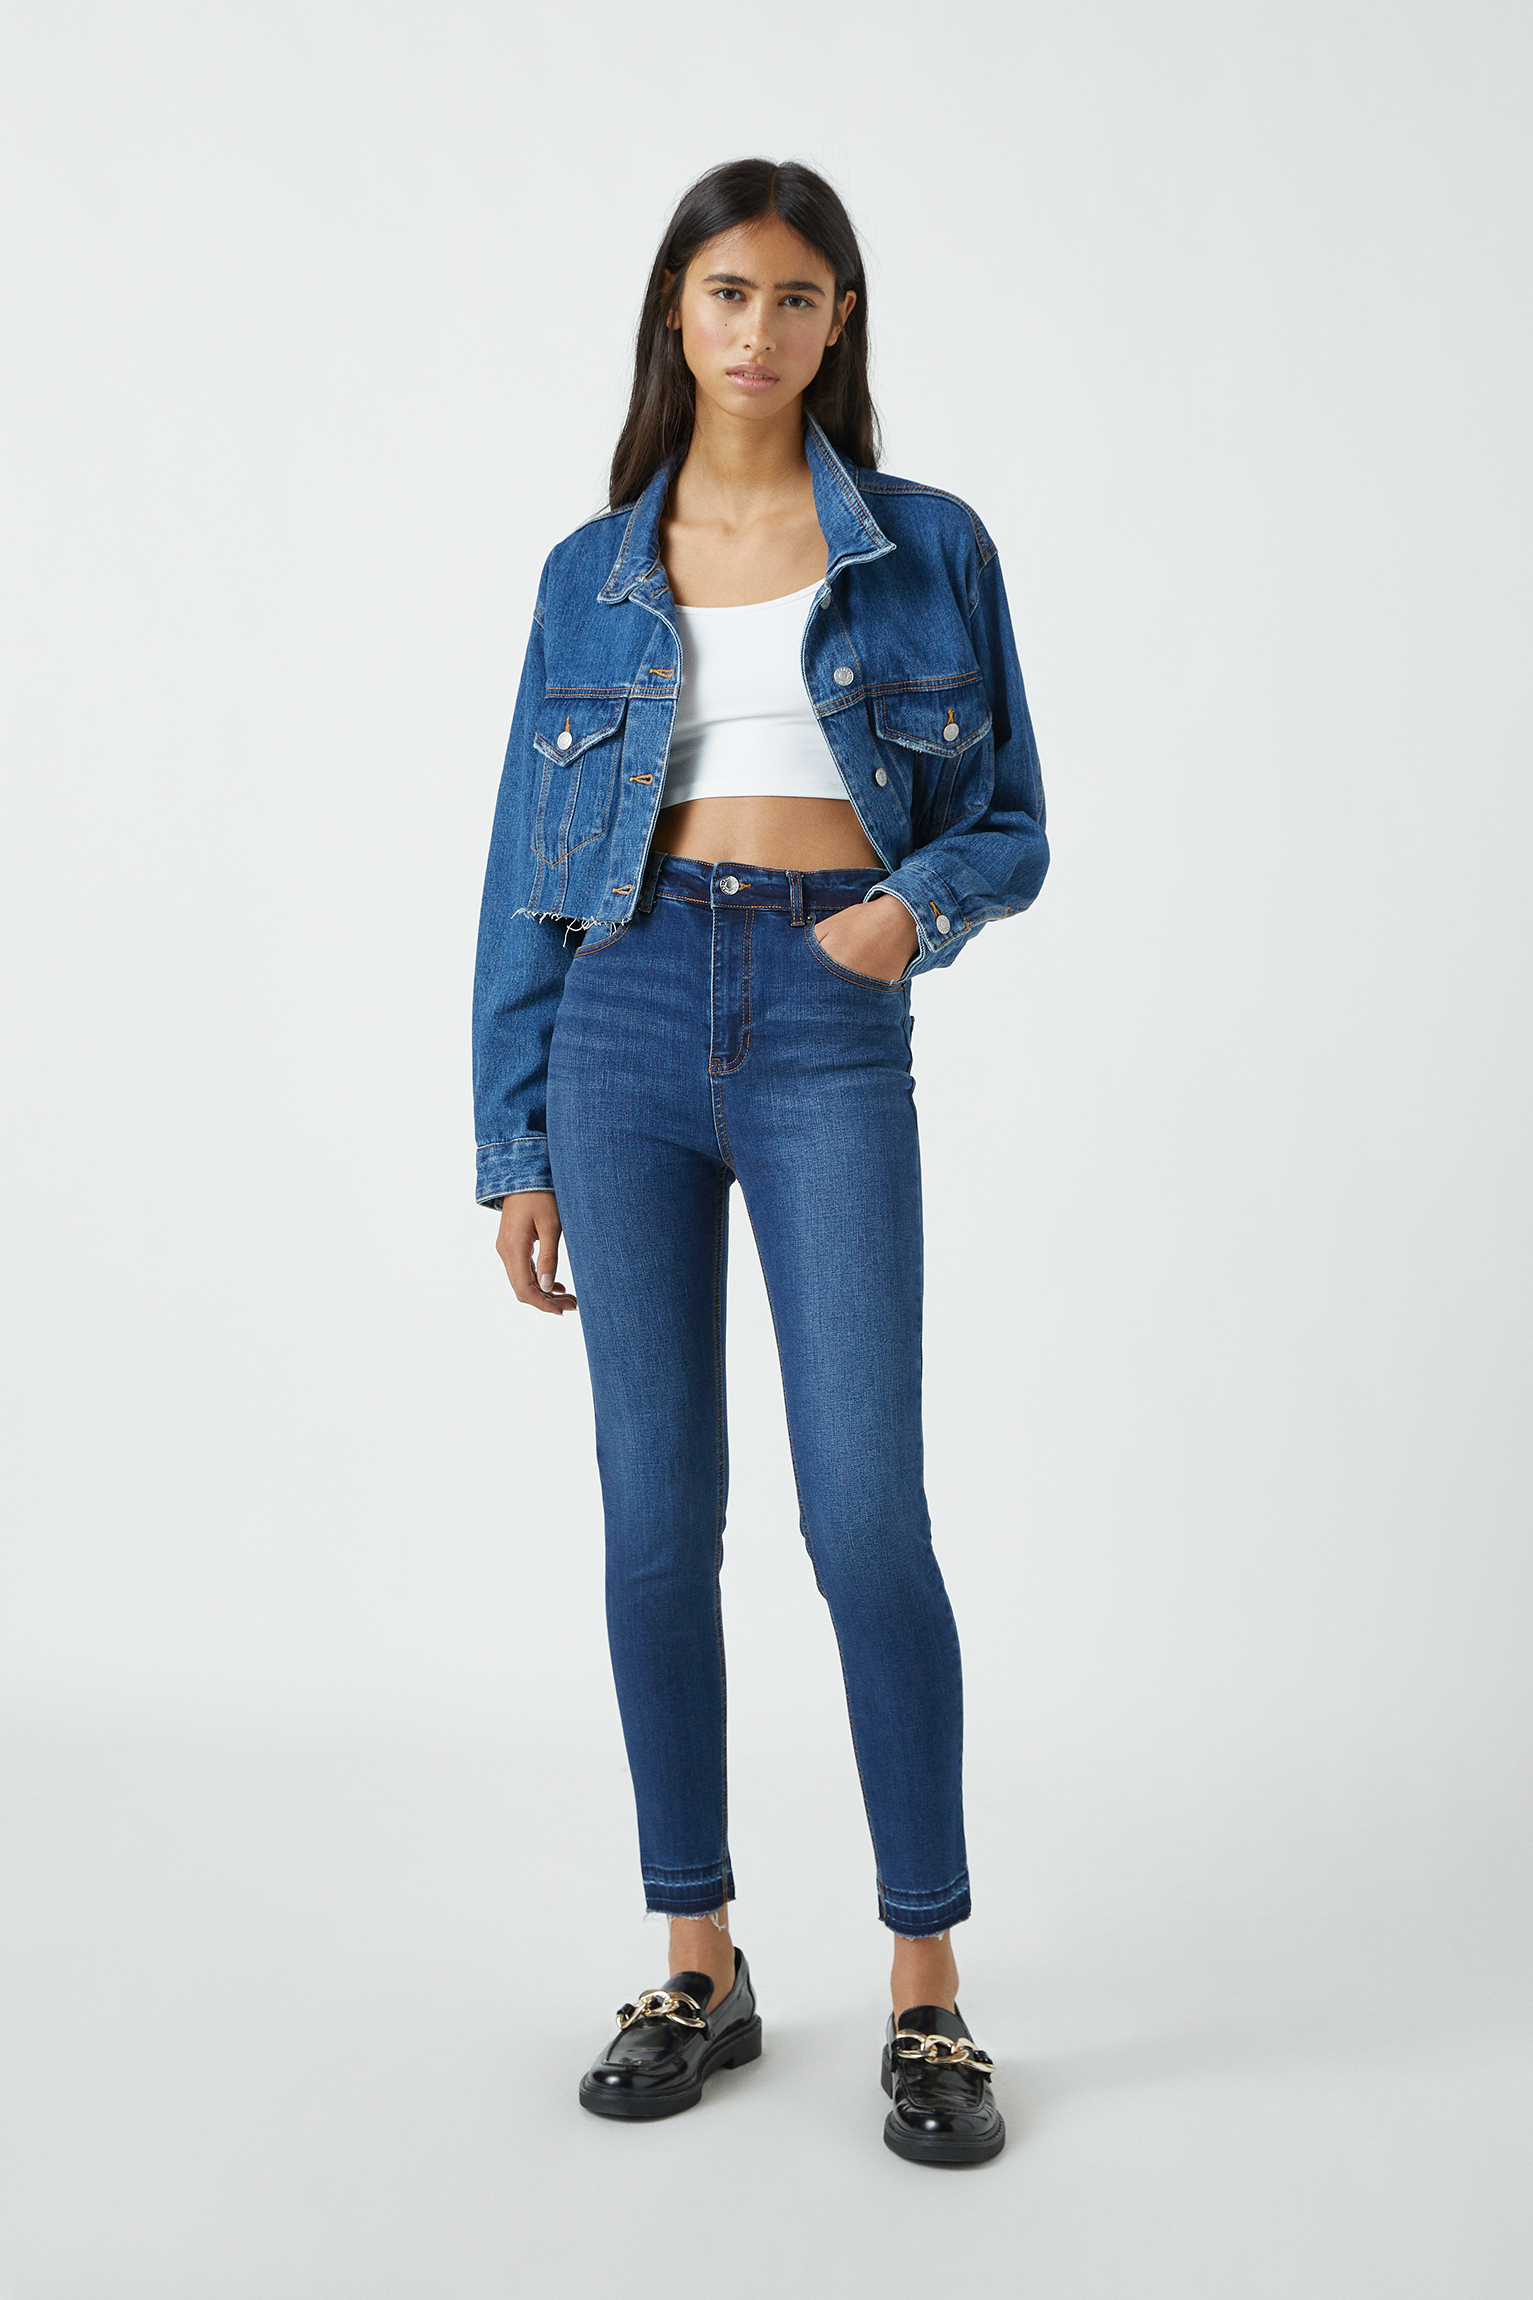 capri jeans skinny